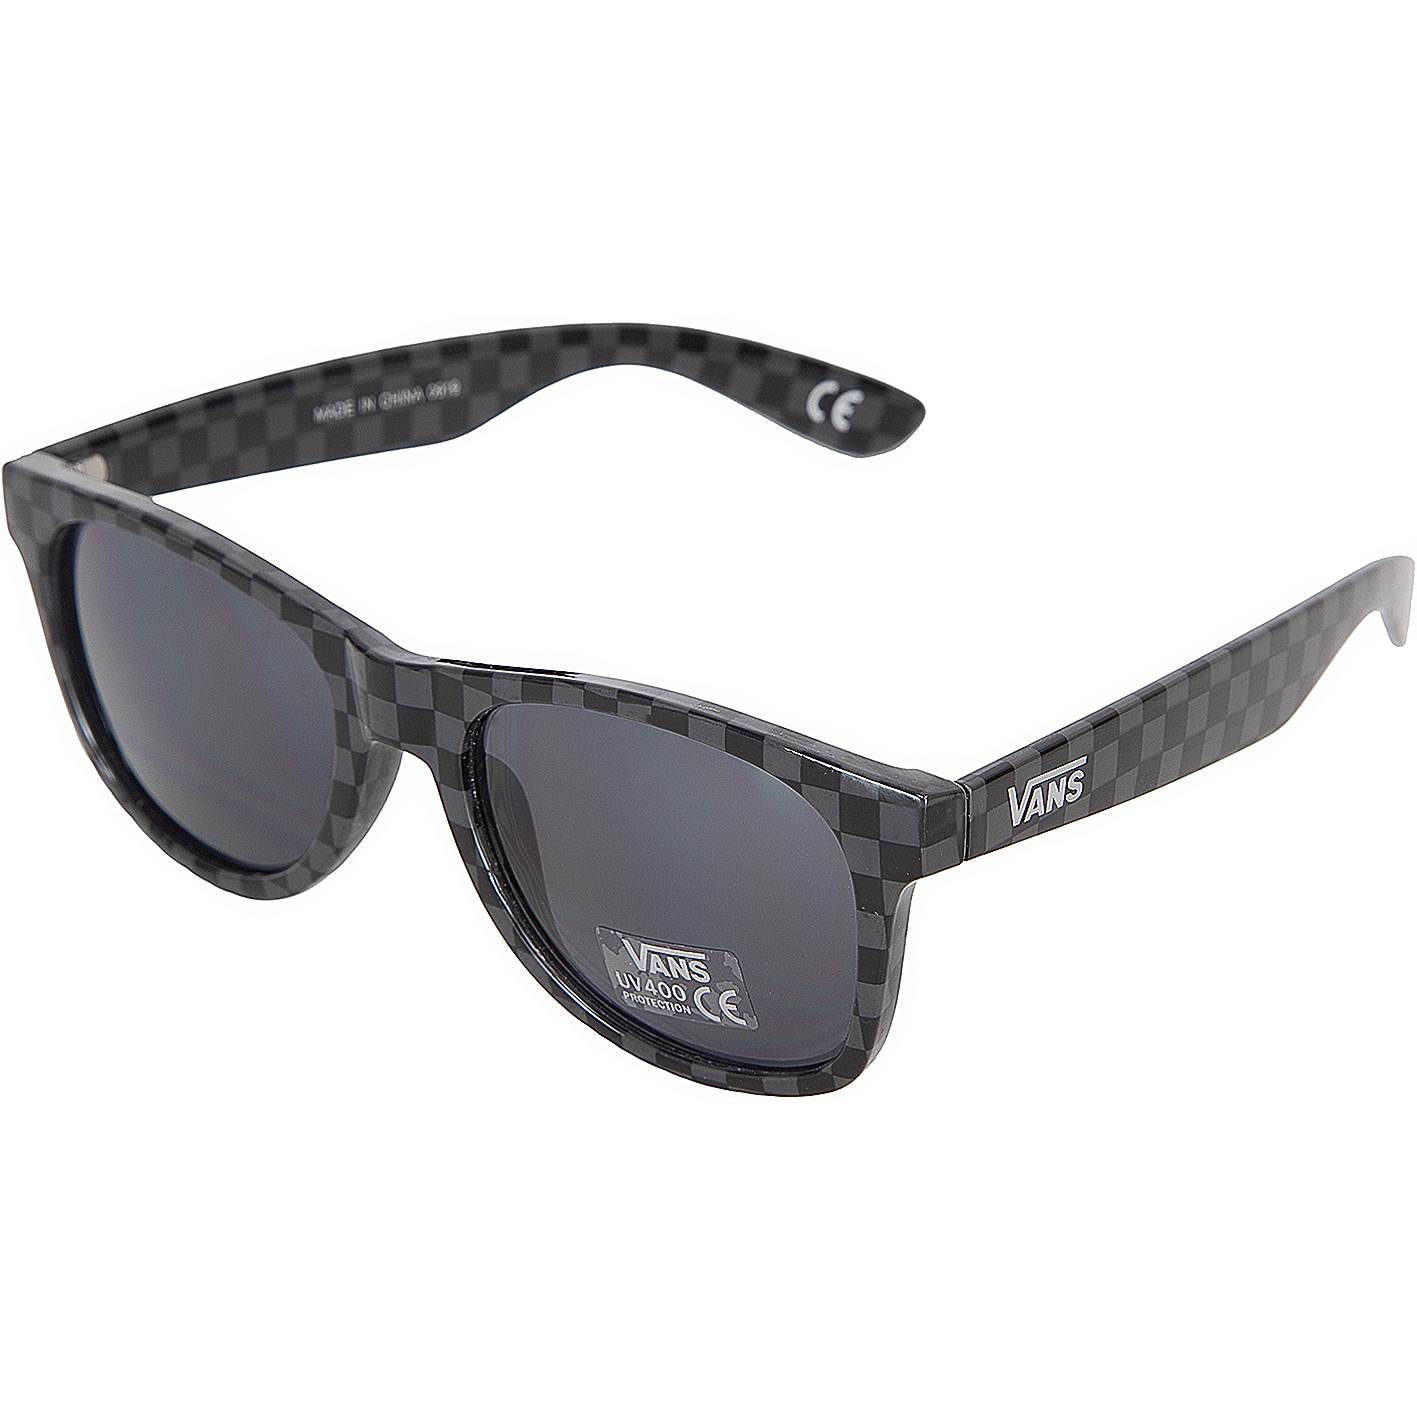 ☆ Vans Sonnenbrille Spicoli schwarz - hier bestellen!